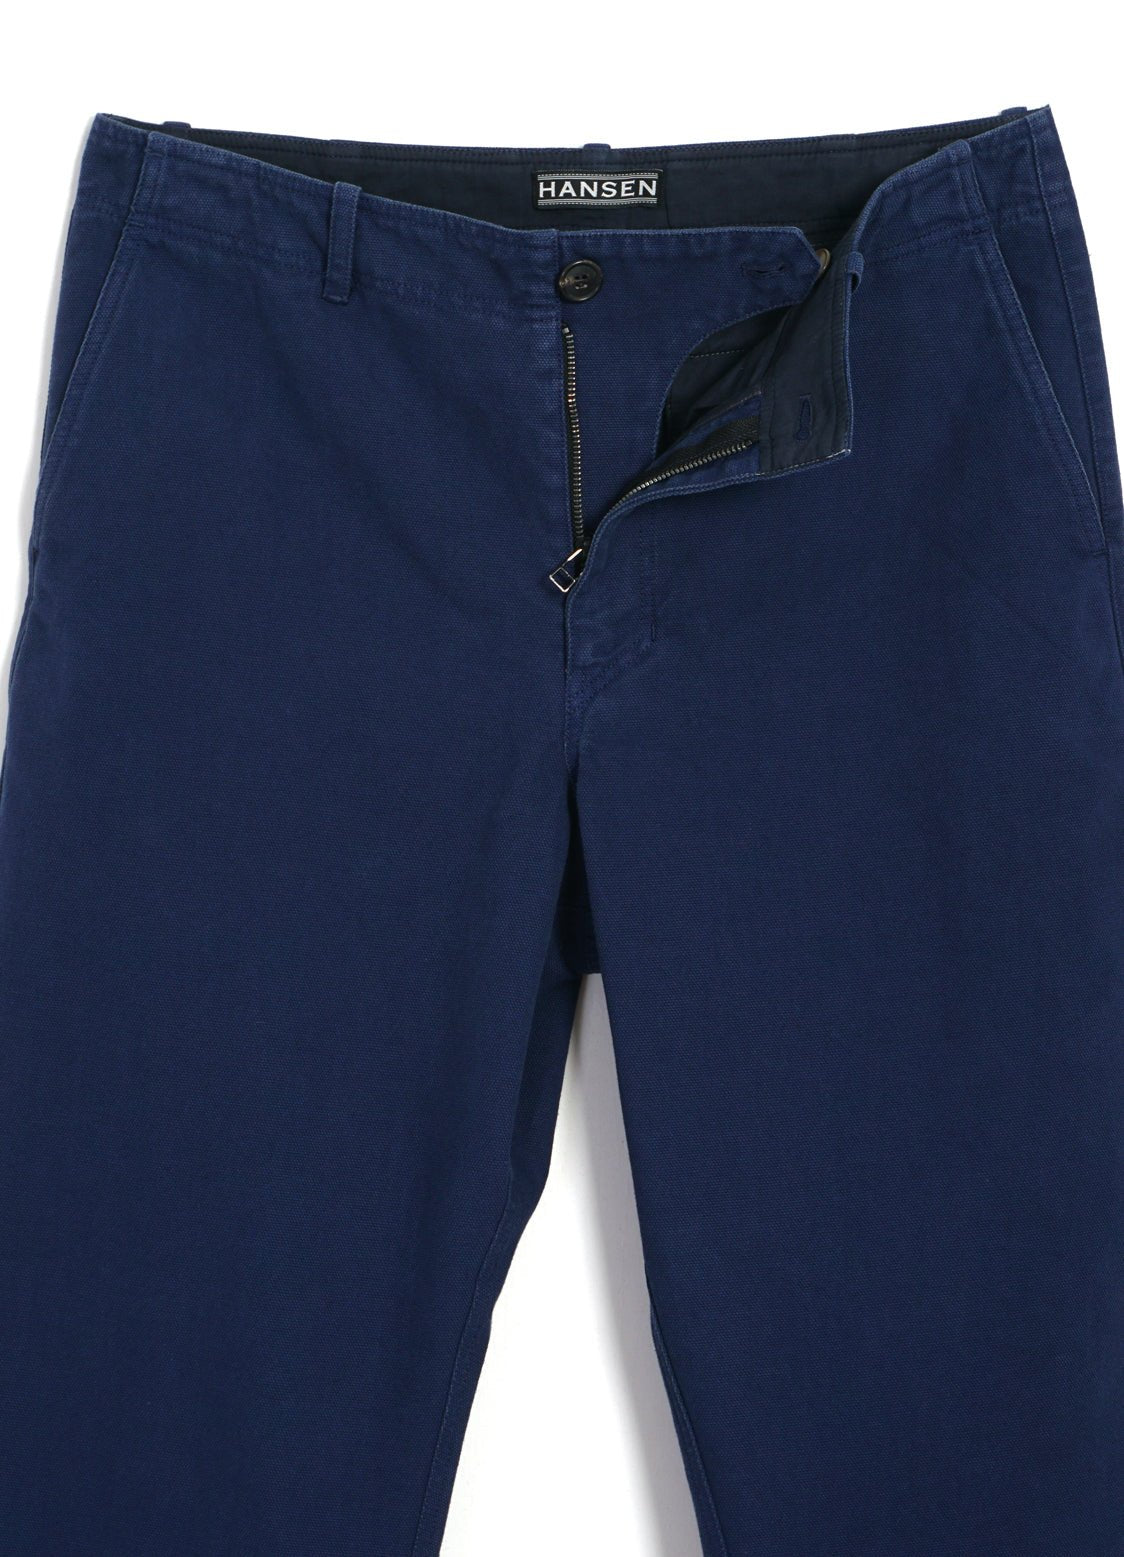 Isabel Marant Black Cut off Denim Jeans Shorts Trousers Pants size 40 -  swapshop.gr